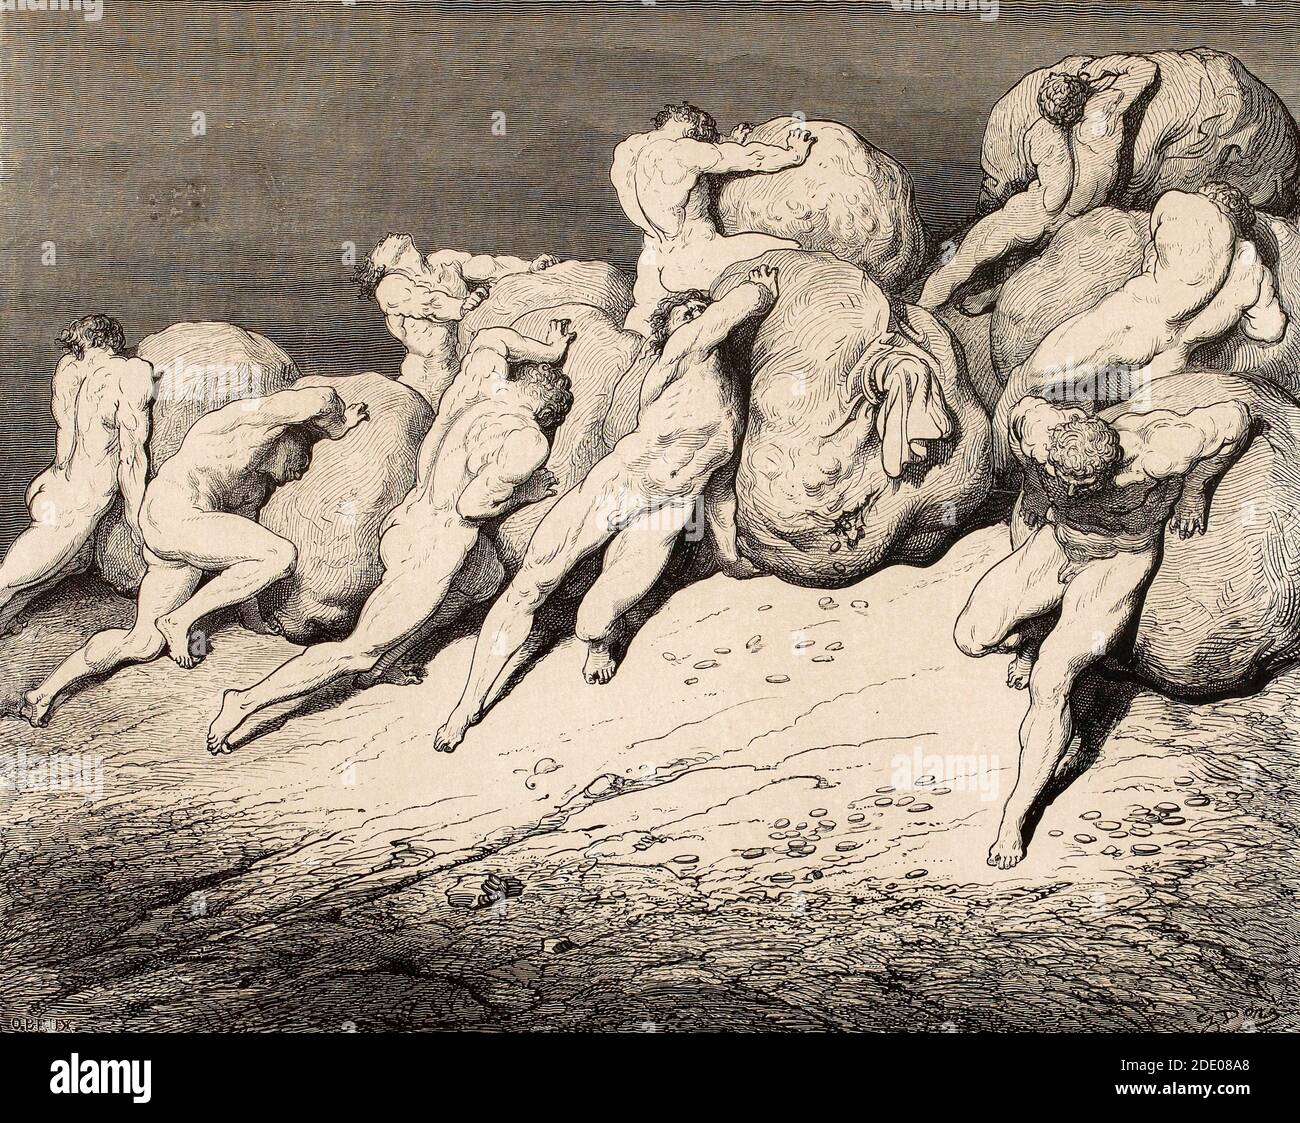 Dante Divina Commedia - Infierno - quinto círculo - el codicioso, pródigo - Canto VII - ilustración de Gustave Dorè Foto de stock